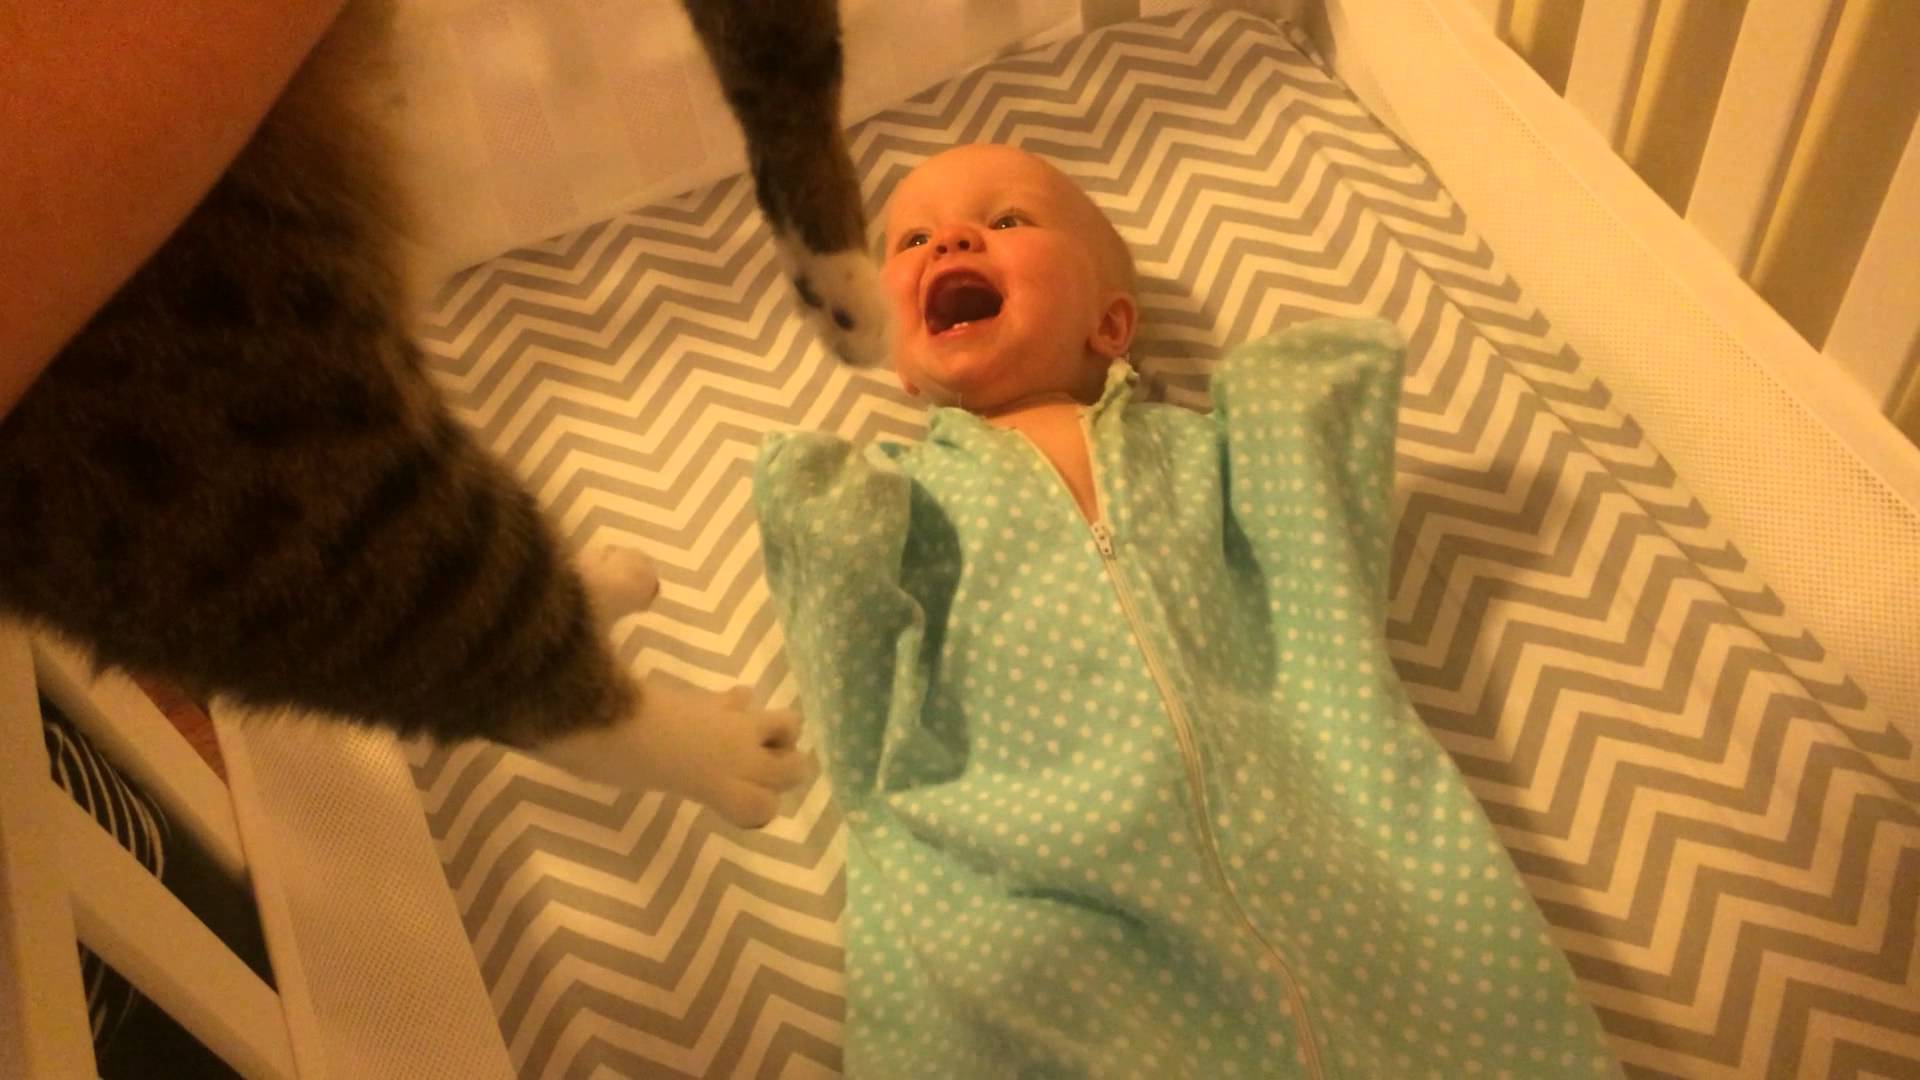 VIDEO: Bērniņam nekas nesagādā tik lielu prieku kā .. kaķis! Četrkājis gan tāds piesardzīgi uzmanīgs. (Baby Loves Cat)